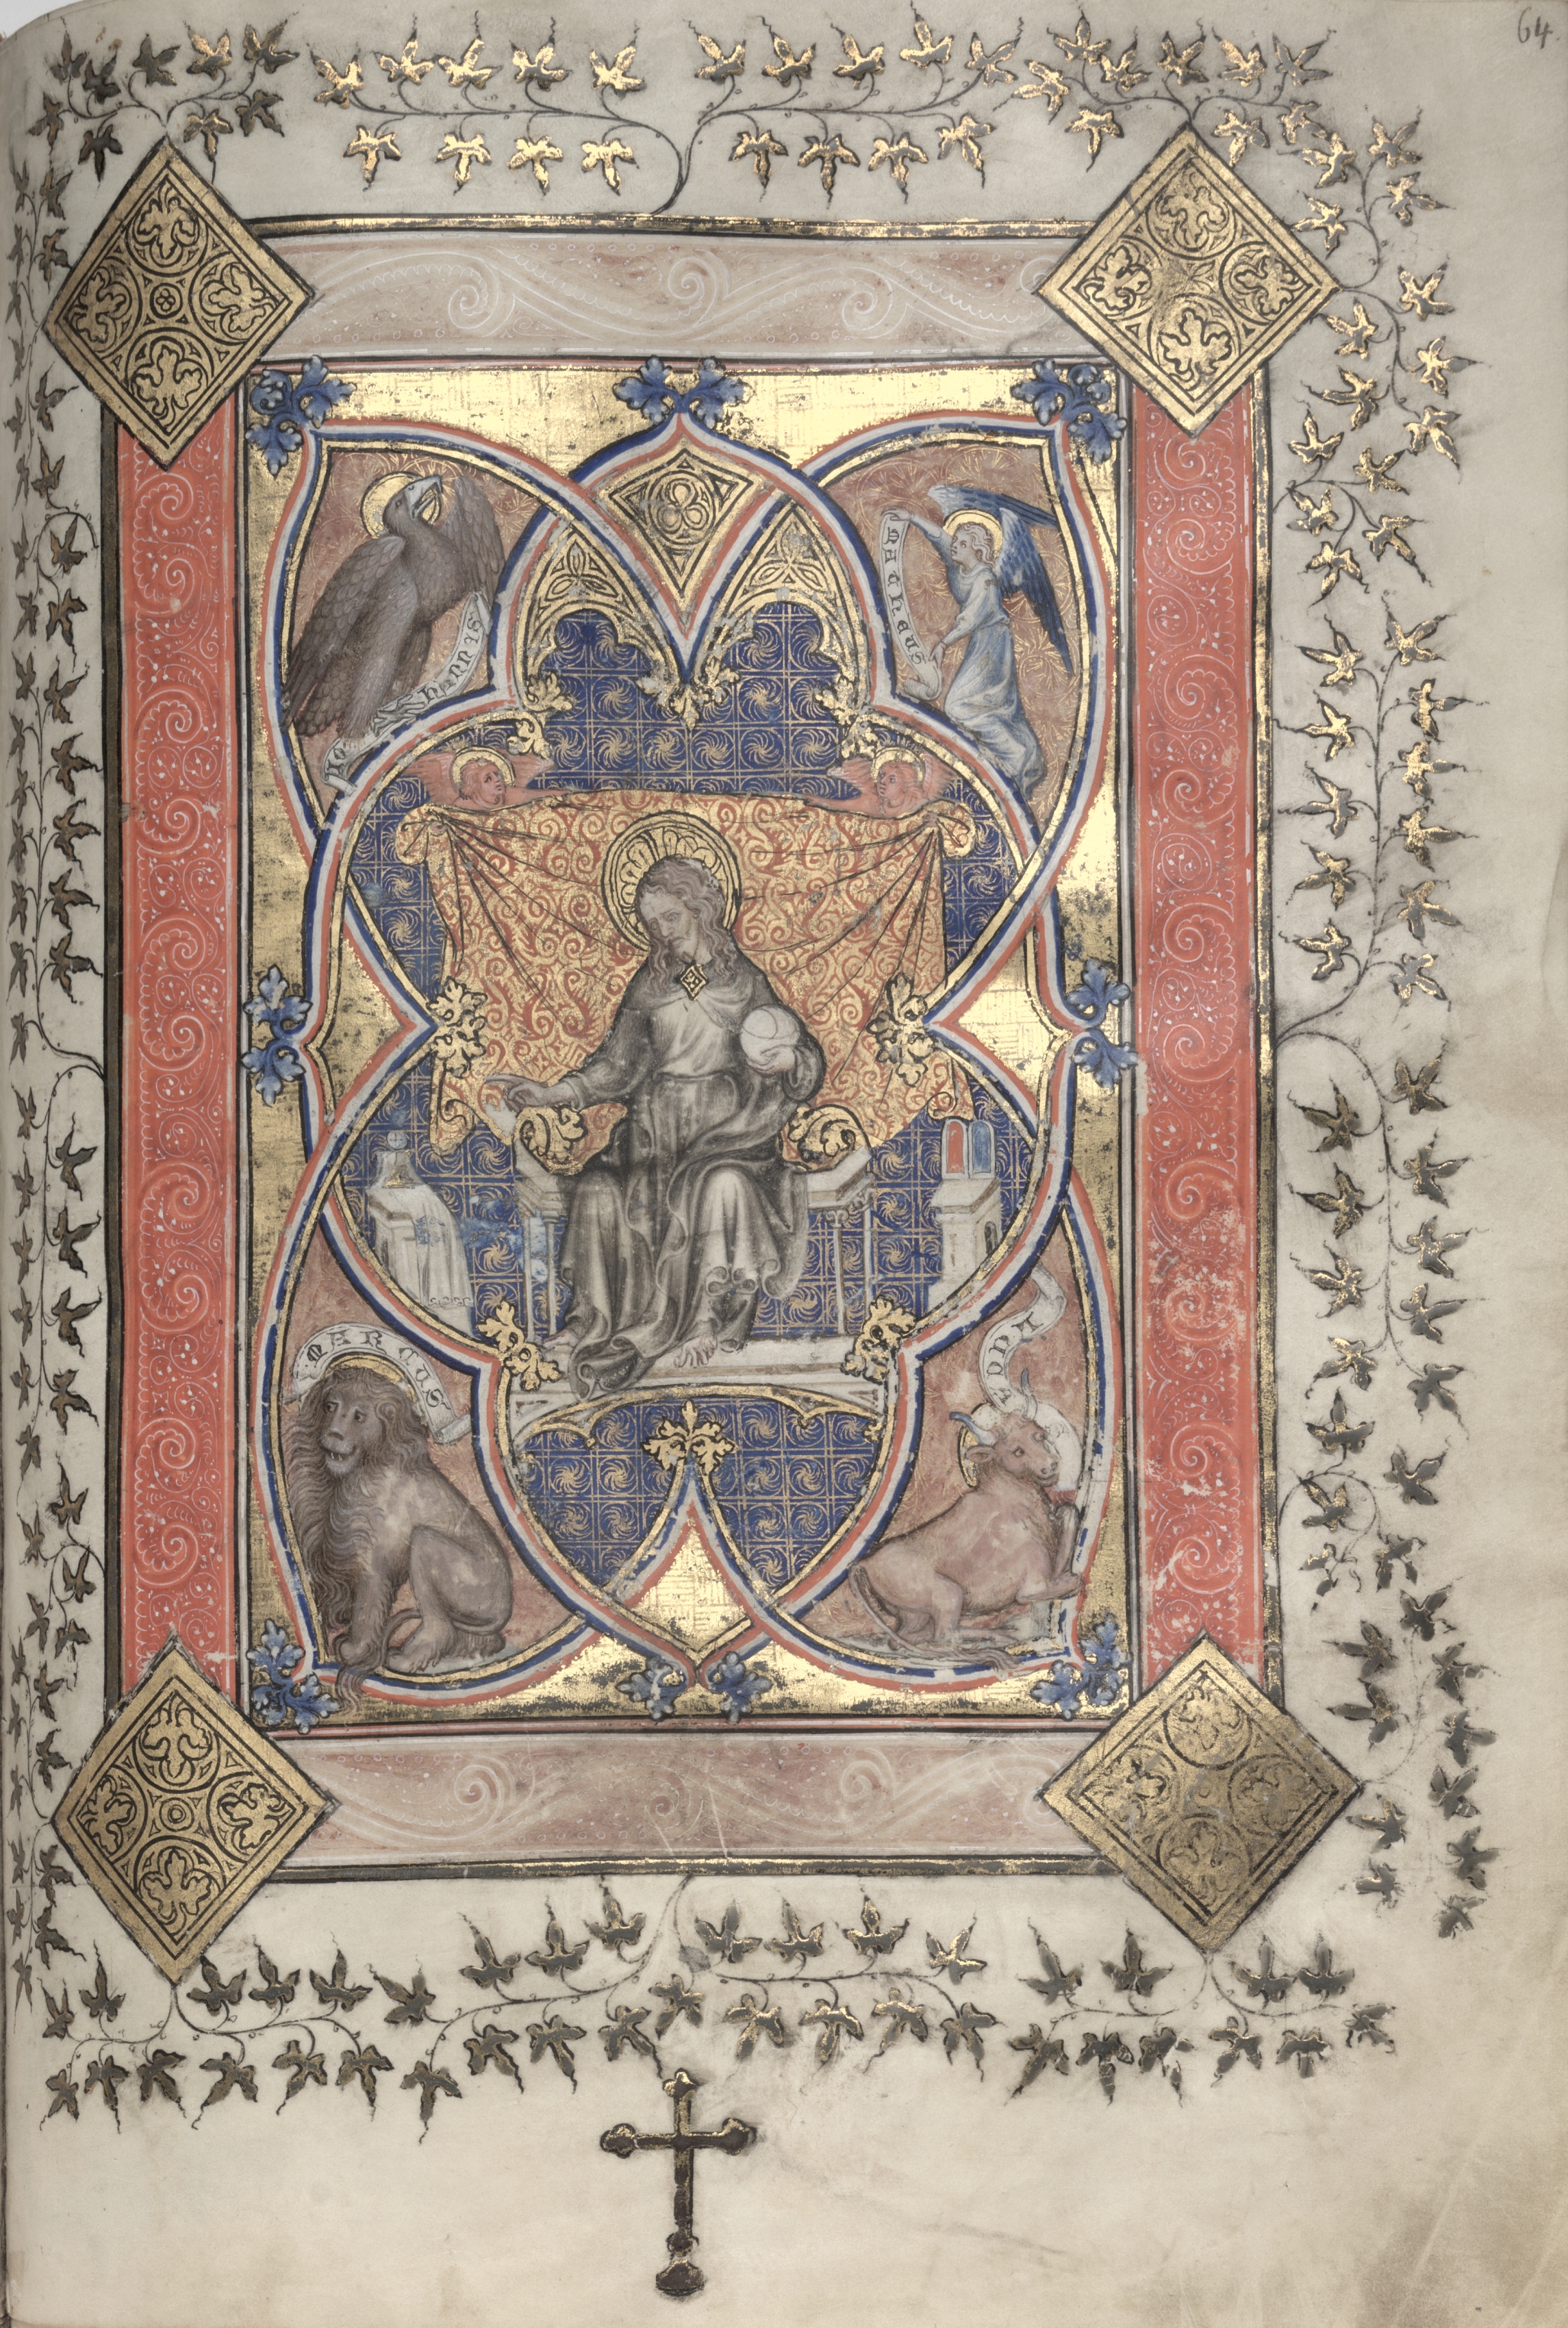 The Gotha Missal:  Fol. 64r, Christ in Majesty